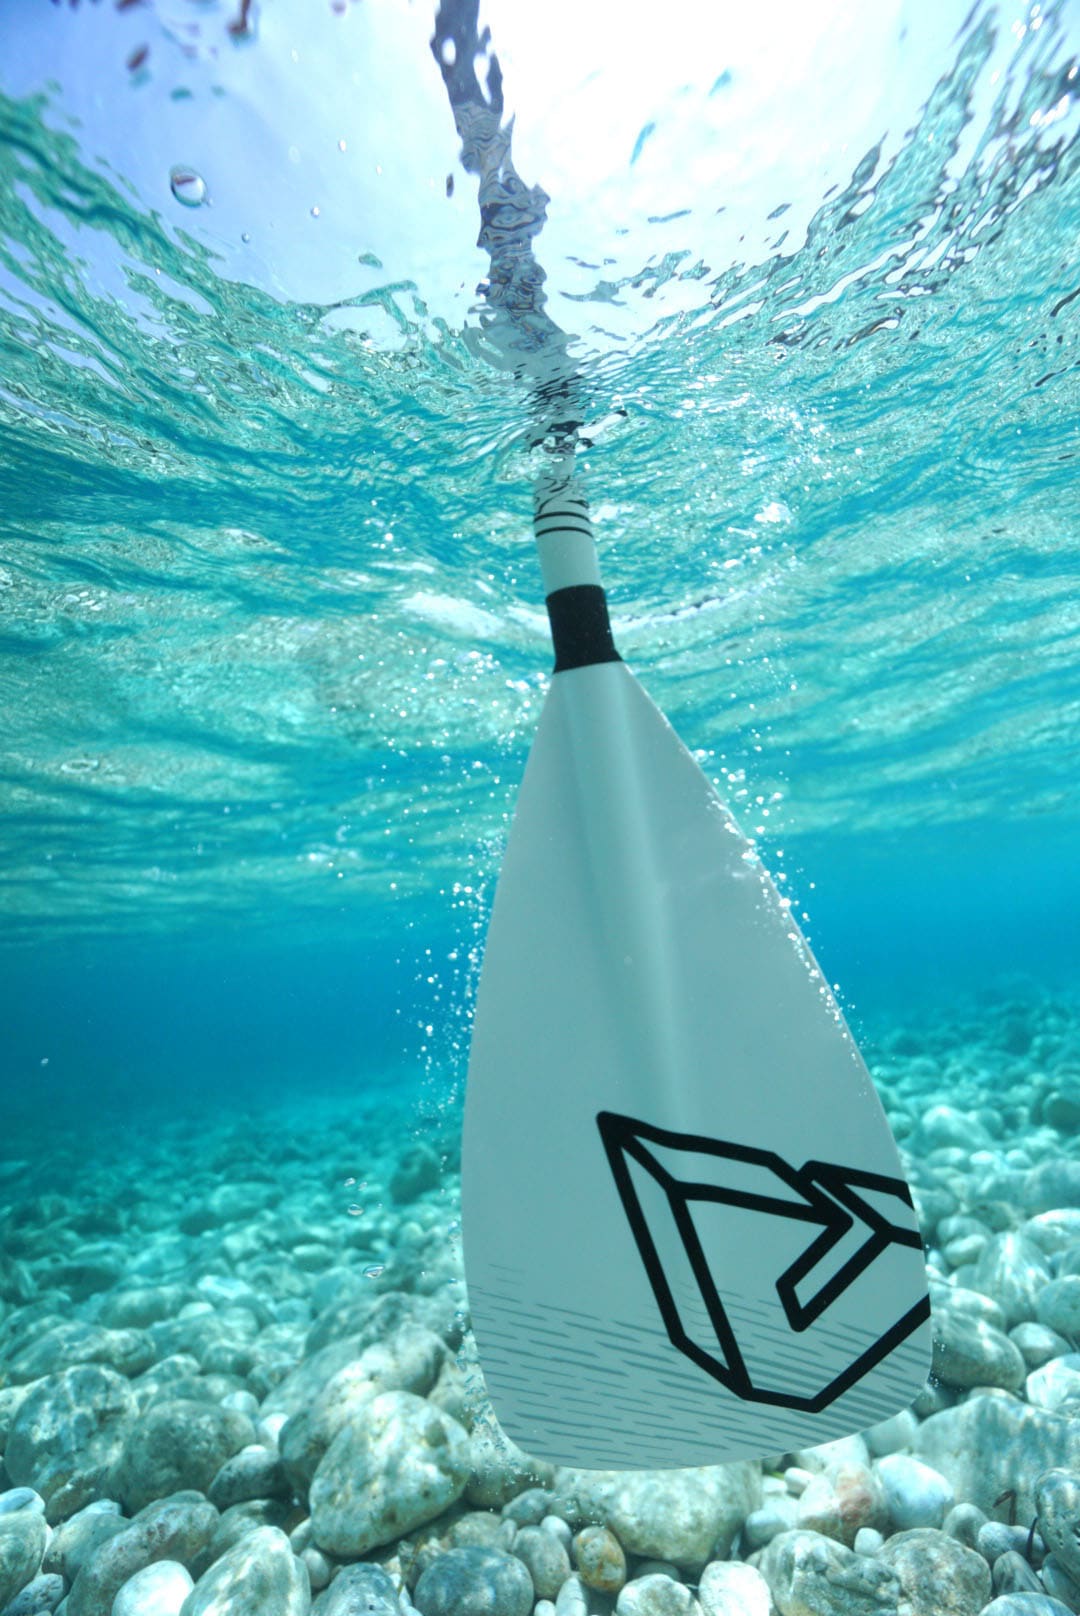 Aqua Marina SUP-Paddel »Solid Paddle Fiberglass 3 teilig Stand-Up Paddel«